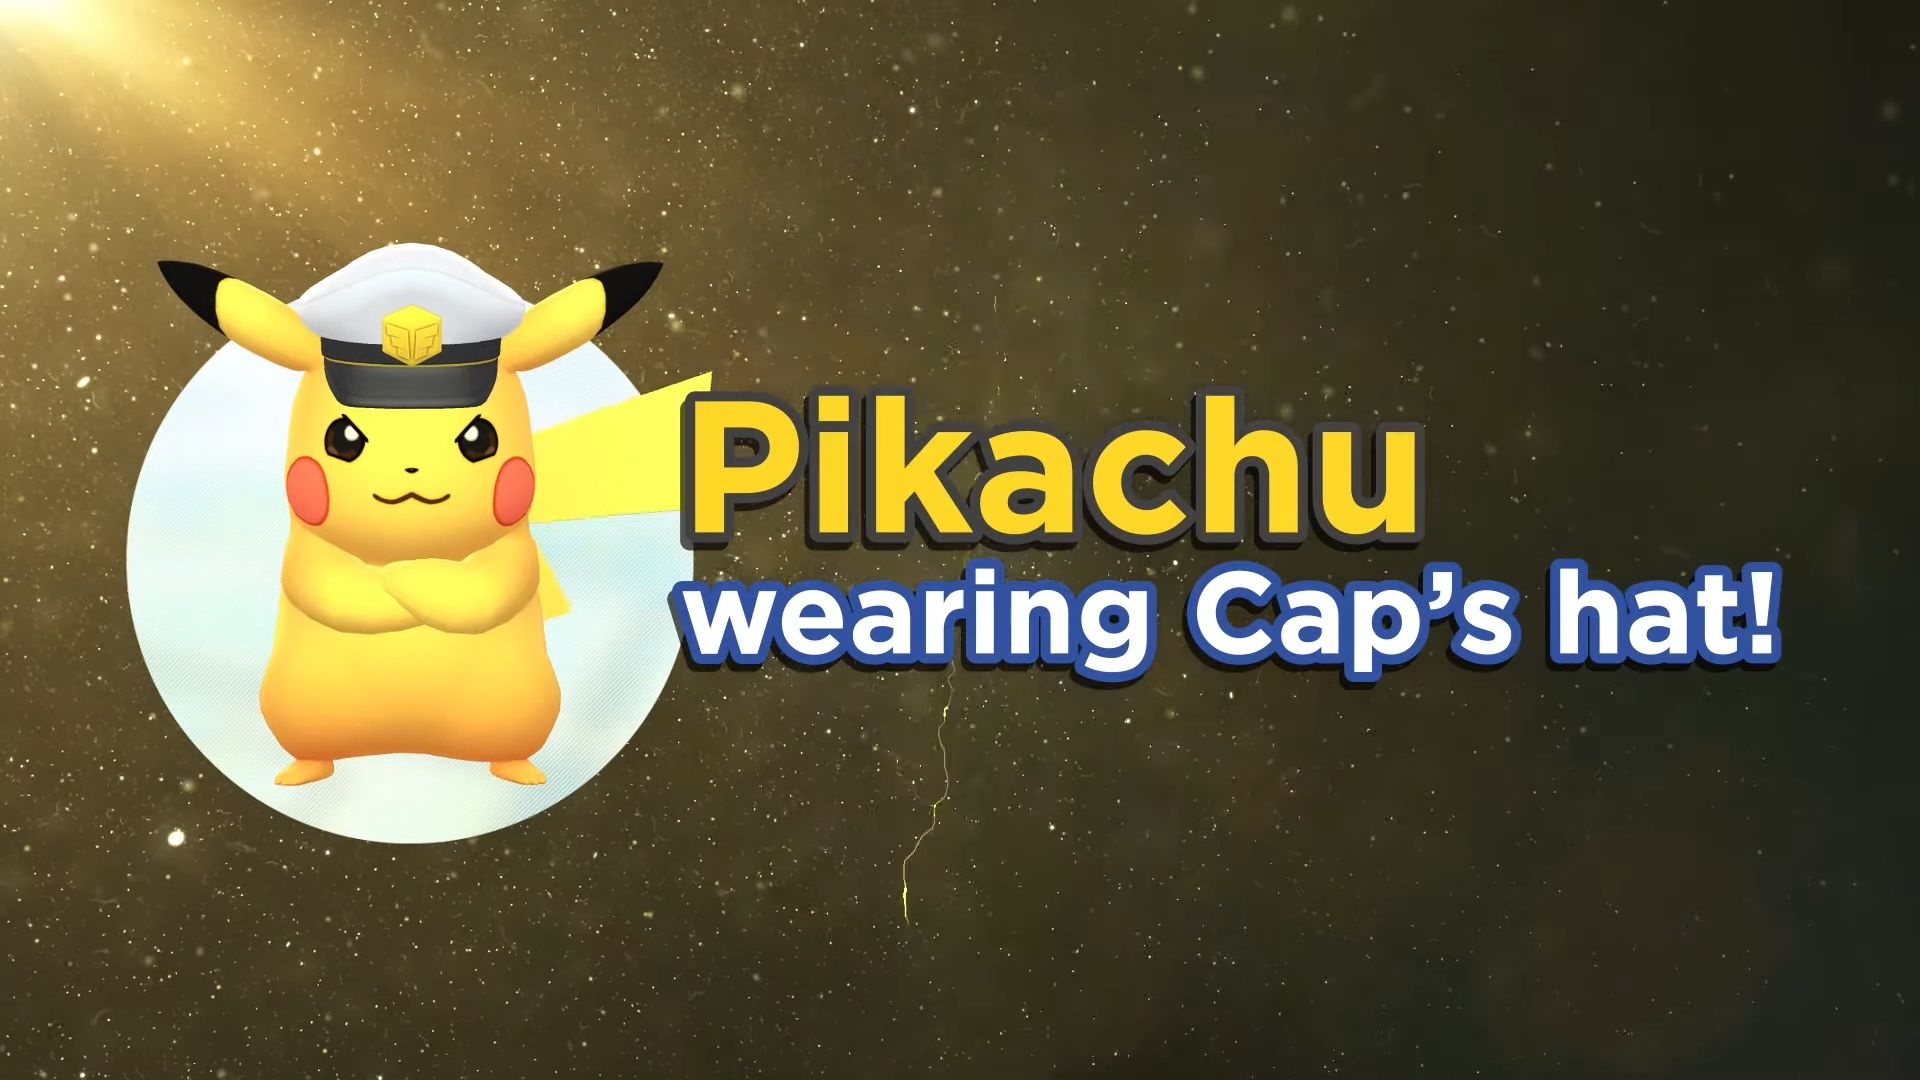 Pikachu wearing Cap's hat in Pokemon Go